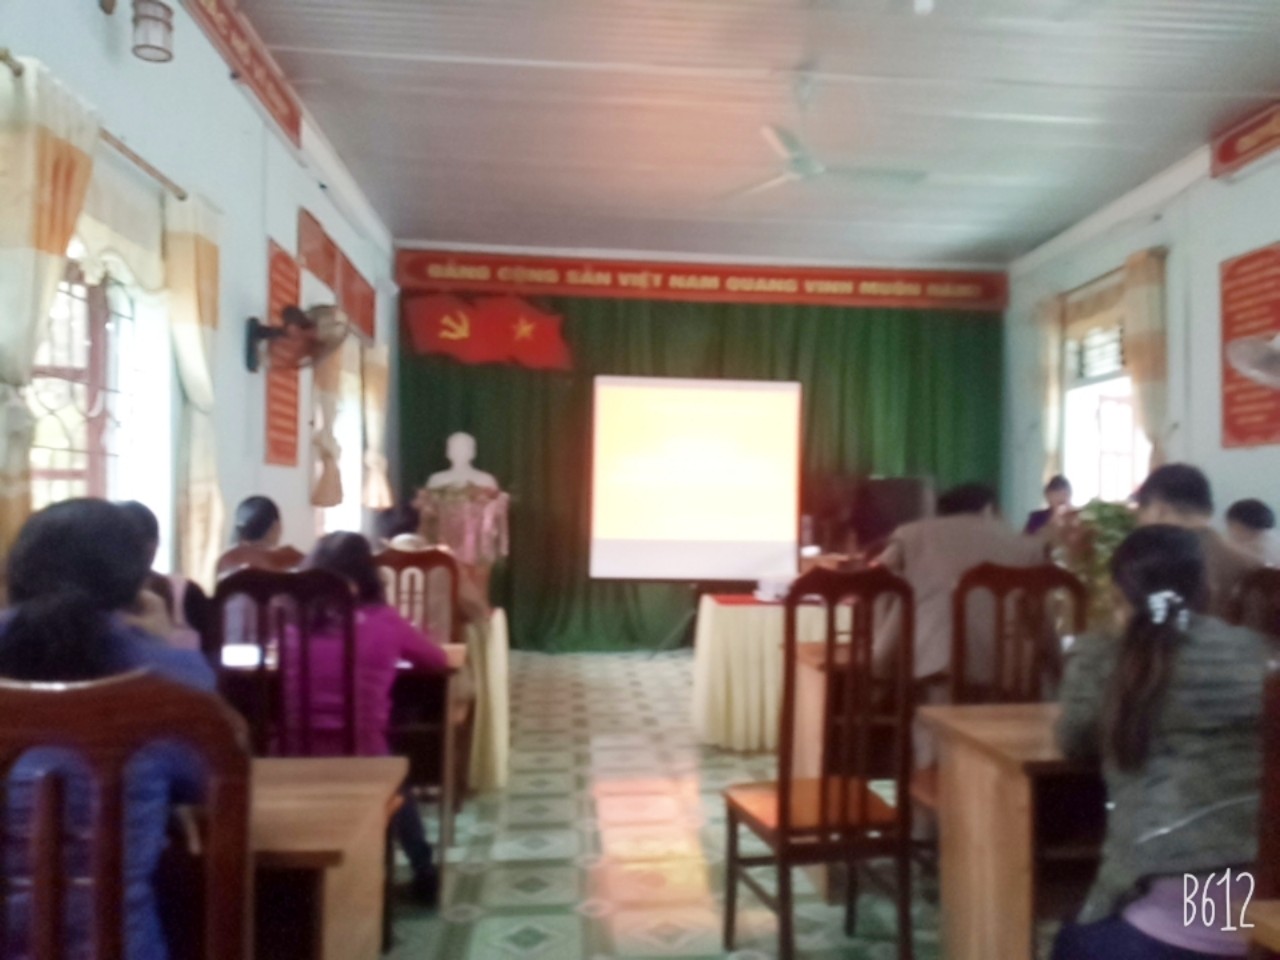 Ủy ban nhân dân xã Phú Nam tổ chức Hội nghị triển khai sách giáo khoa mới